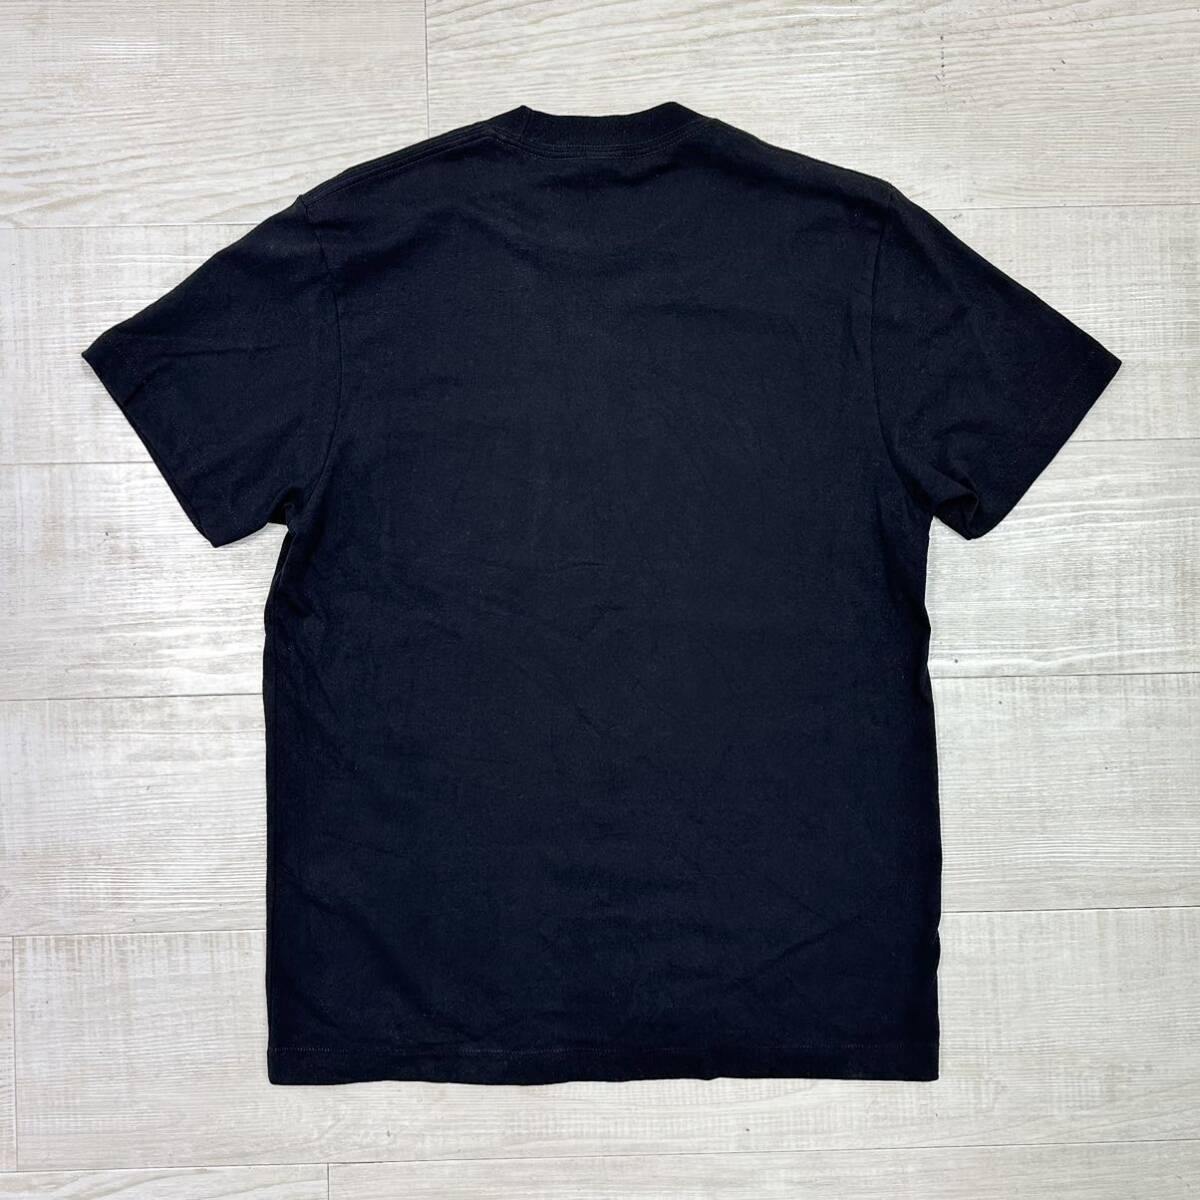 JJJJOUND ジョウンド LESS 4 EVER POCKET T-SHIRT ポケット Tシャツ TEE MADE IN CANADA BLACK ブラック 系 サイズ M _画像2